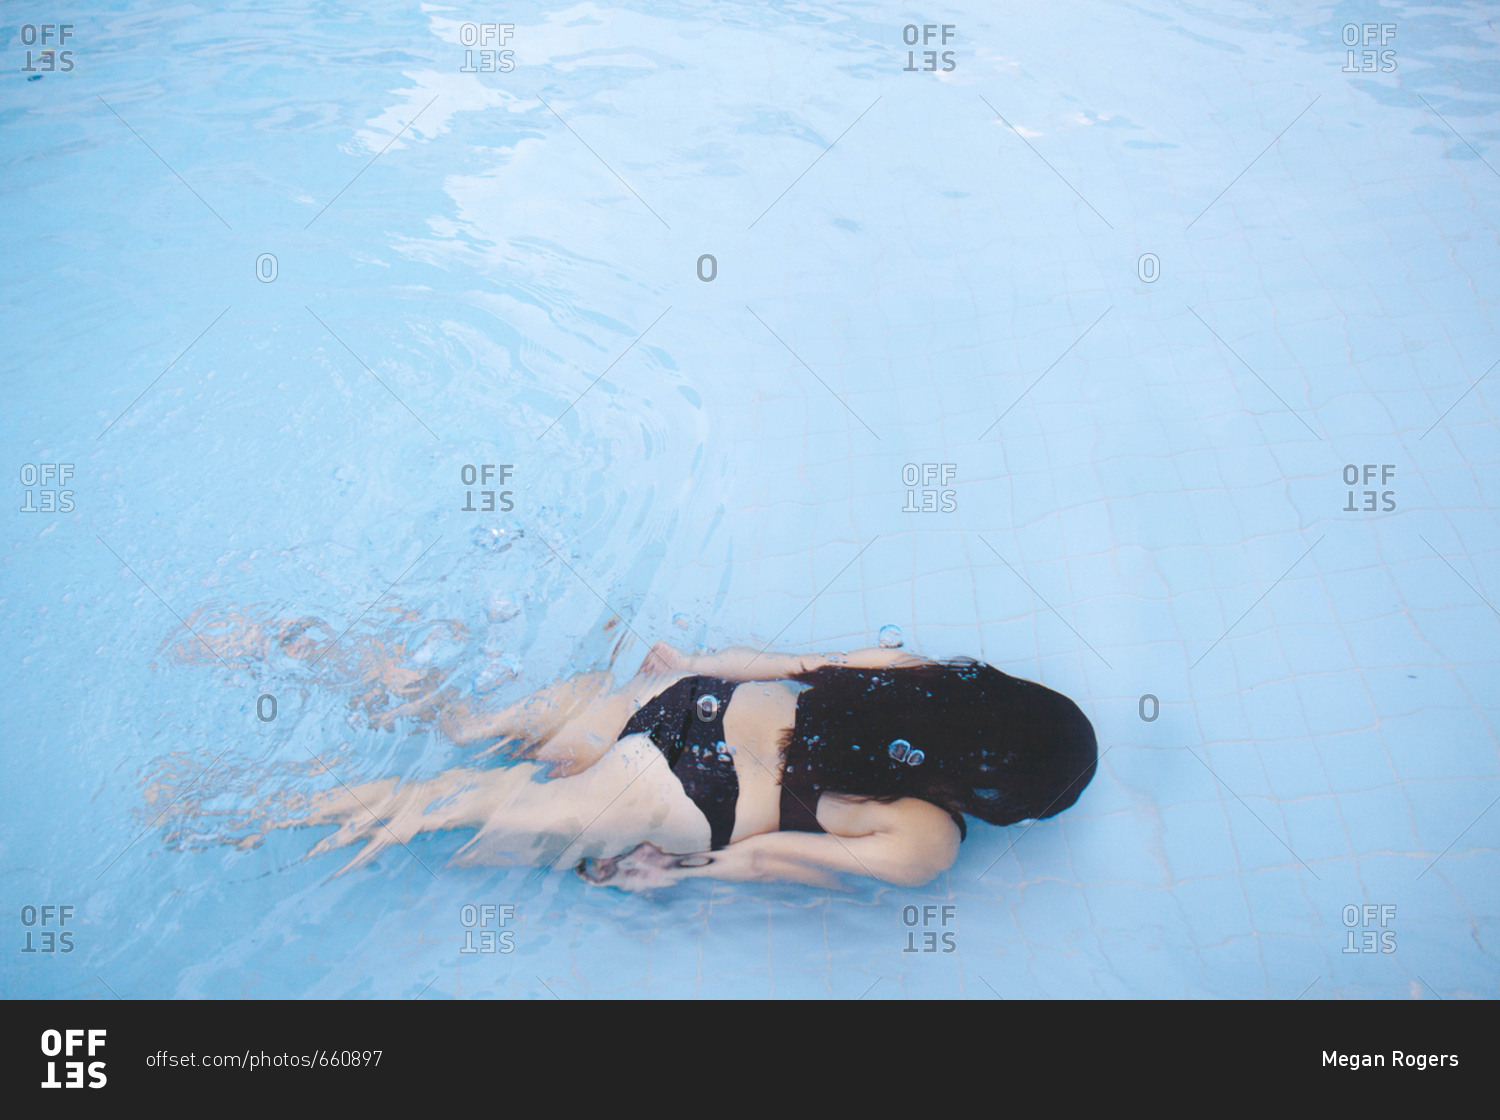 Dark haired woman in black bikini swimming underwater